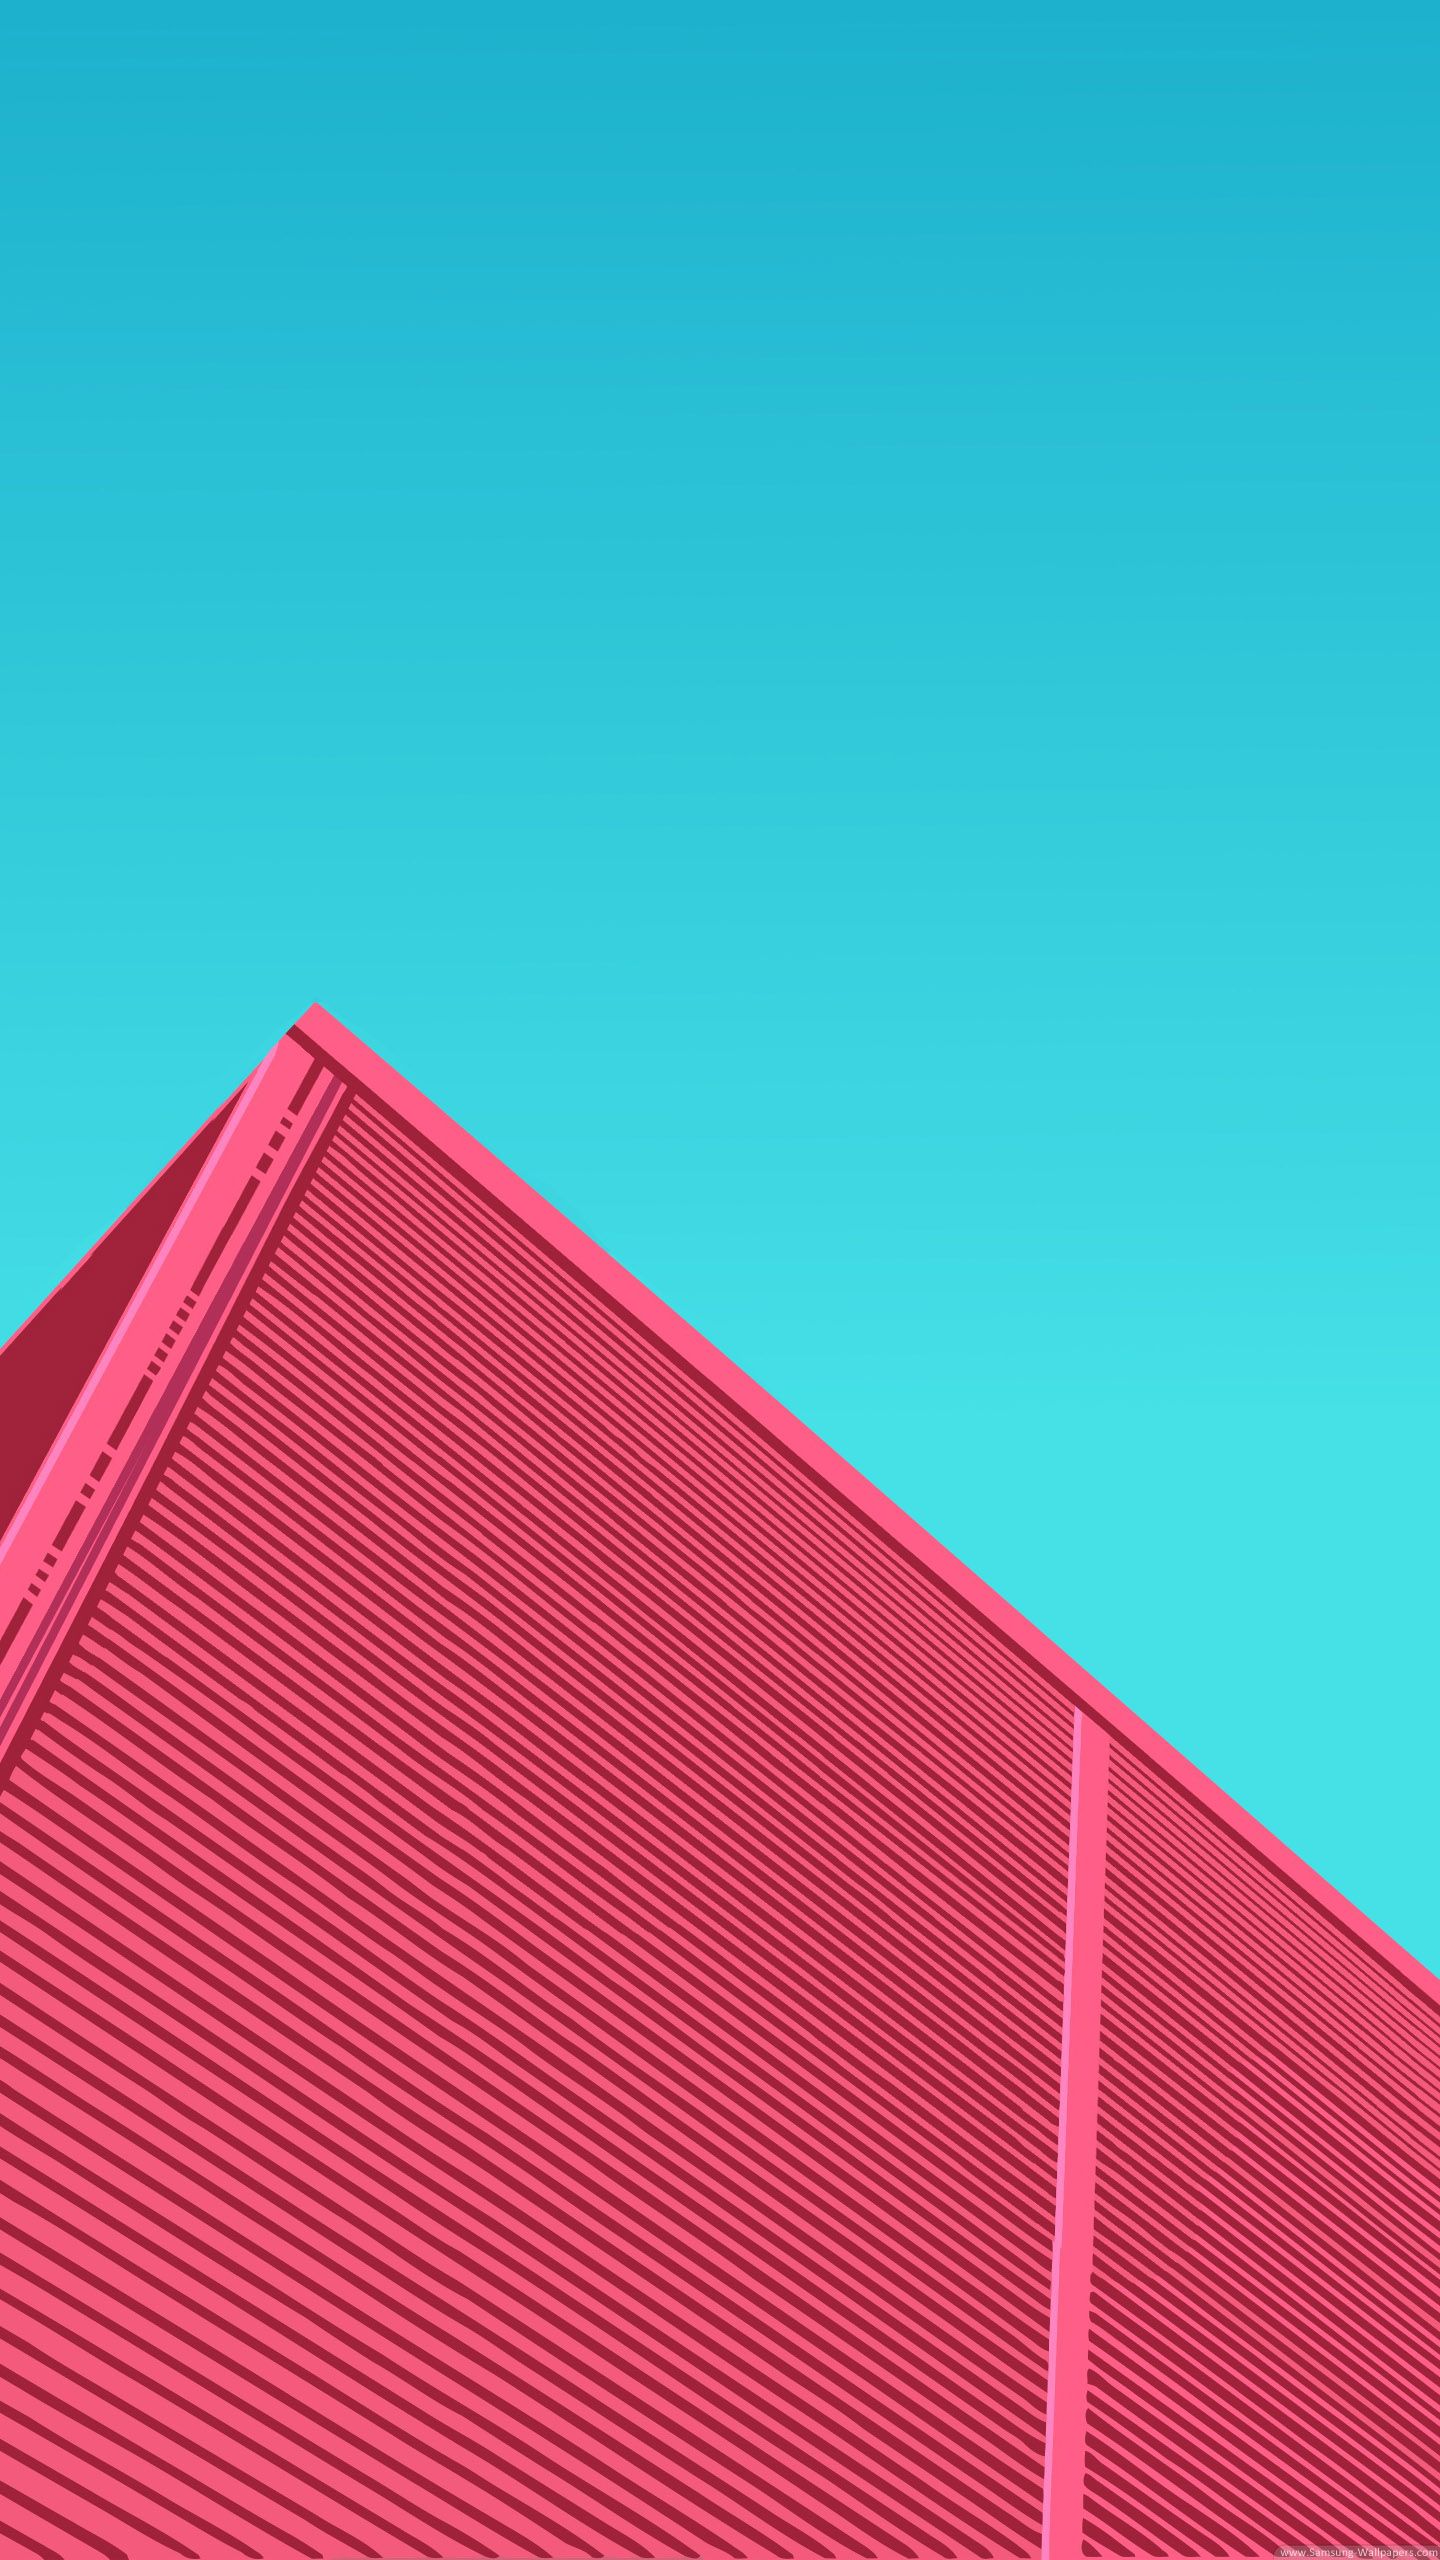 lg g4 fondo de pantalla,rojo,rosado,azul,turquesa,techo